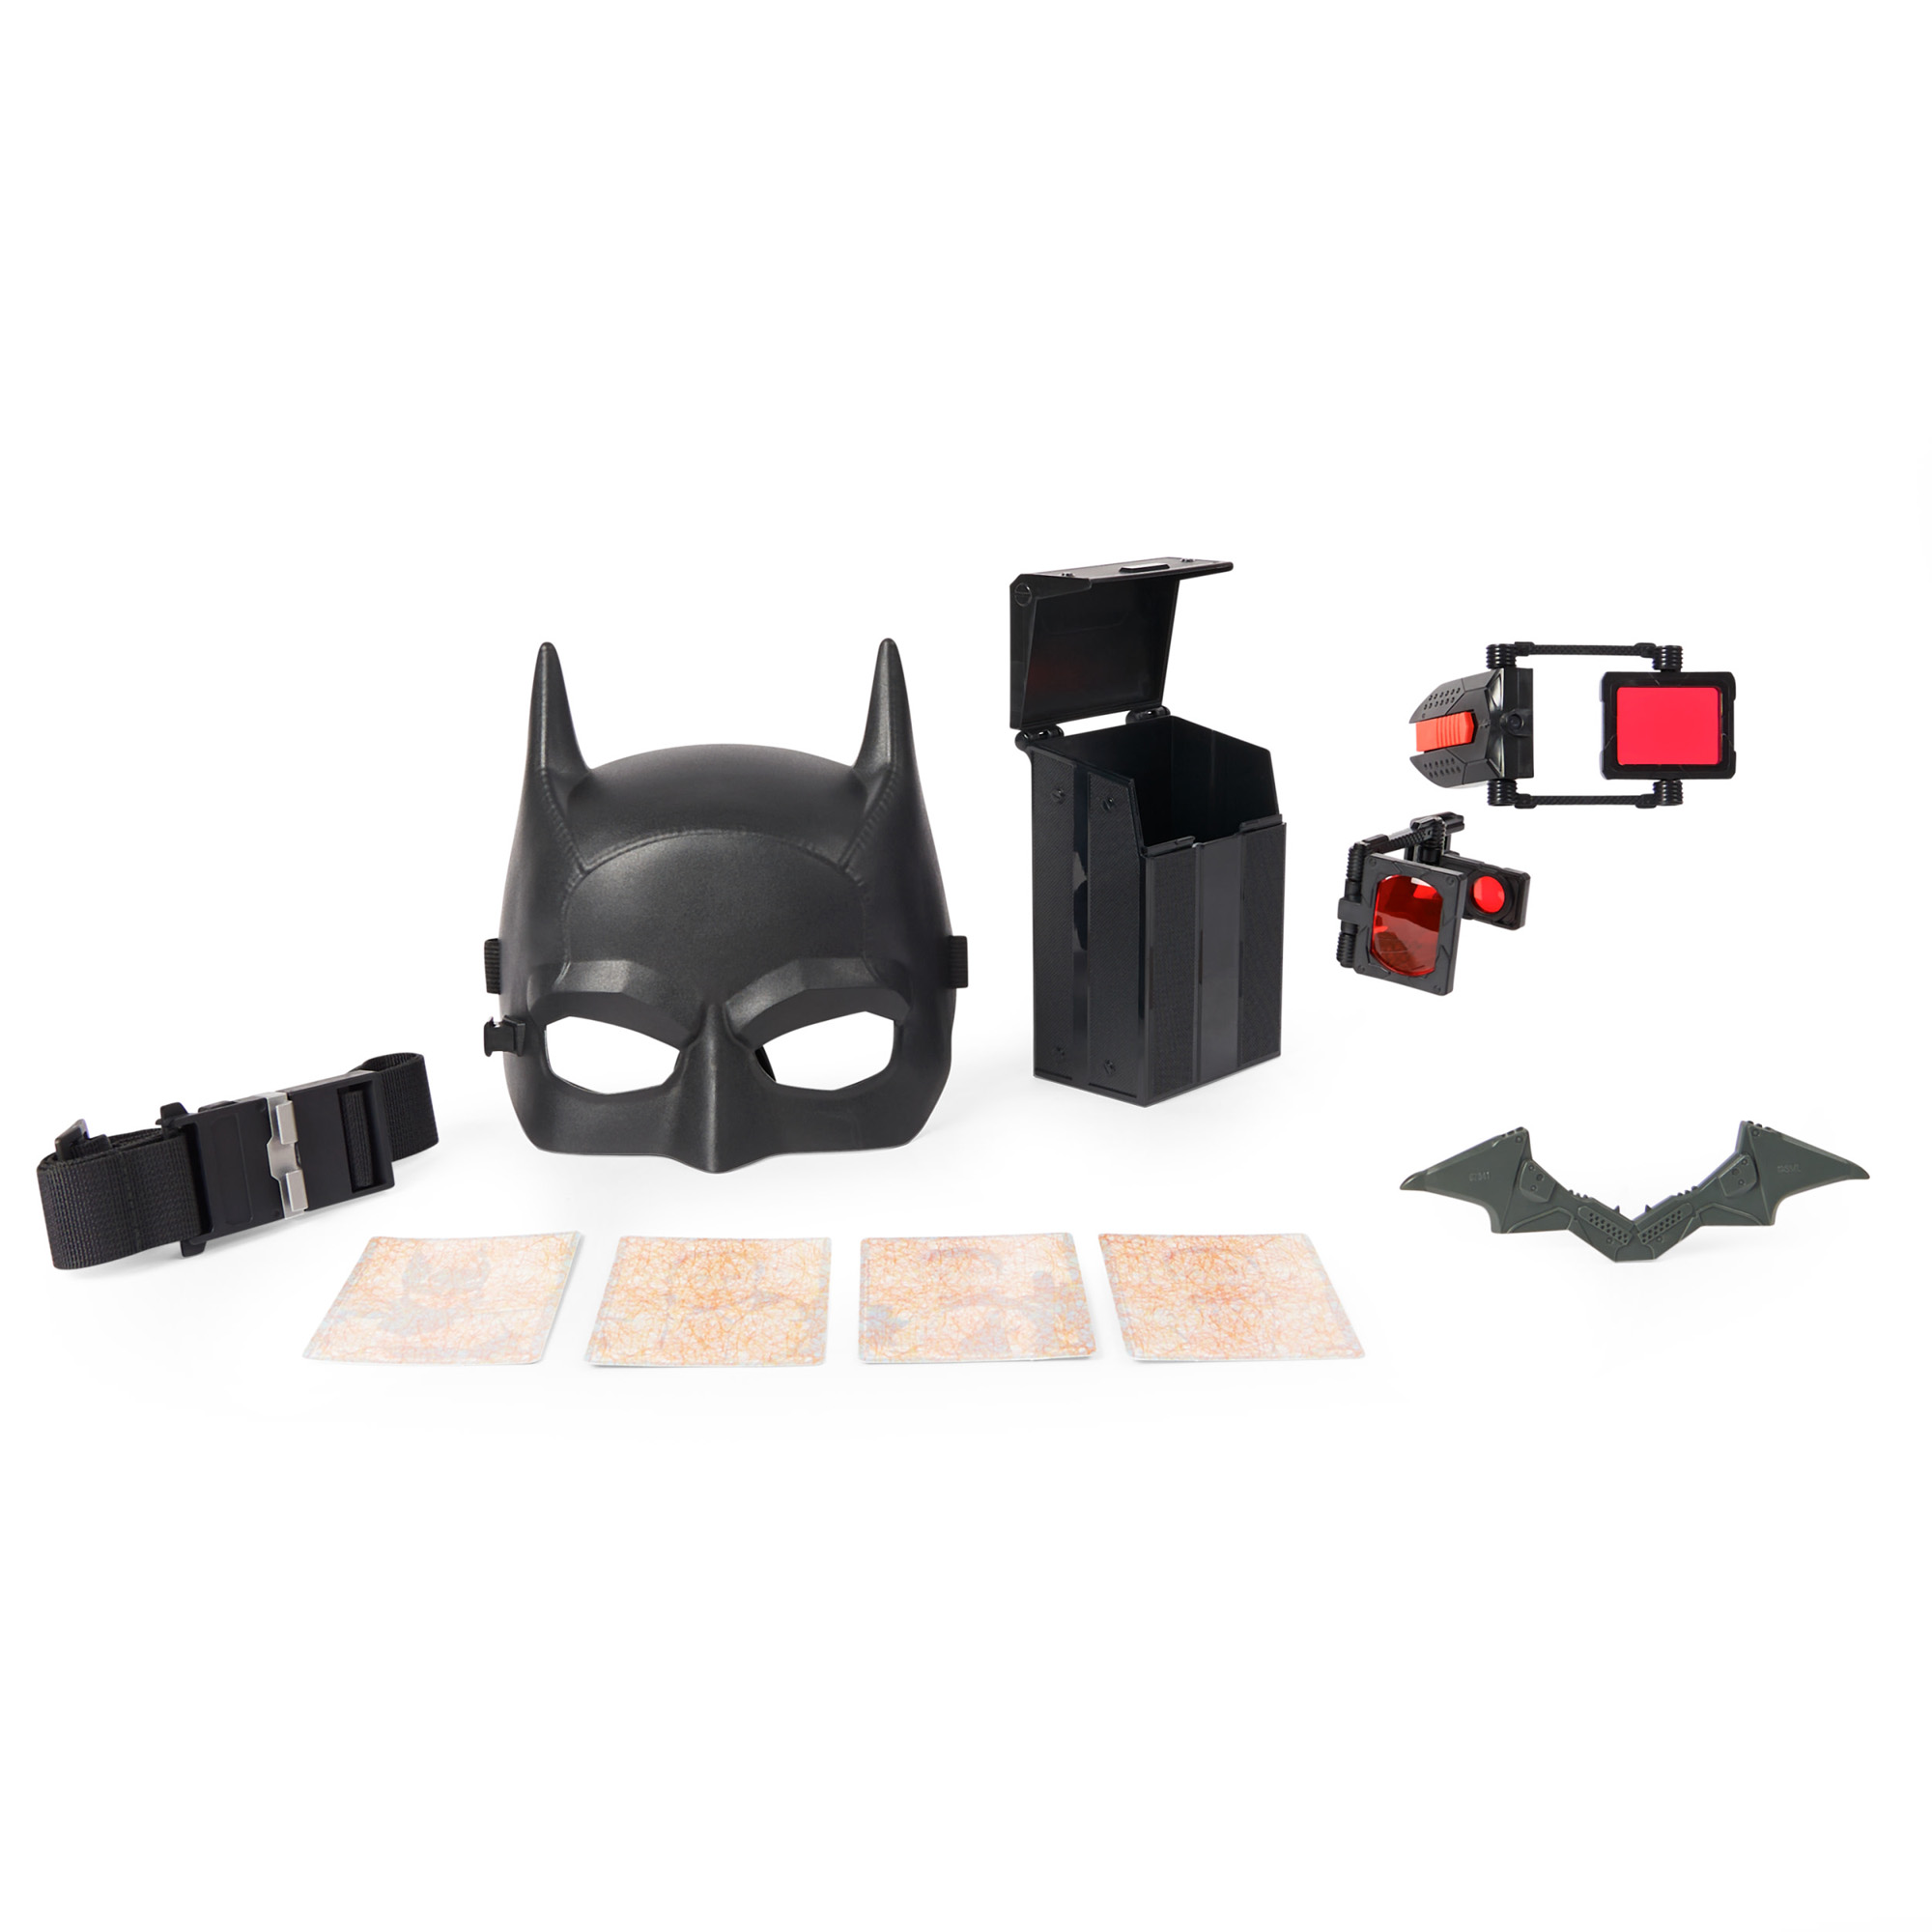 Batman наборы. Batman игровой набор. Игровой набор Бэтмен 17 предметов. Набор Бэтмена. Набор Бэтмена для мальчика.